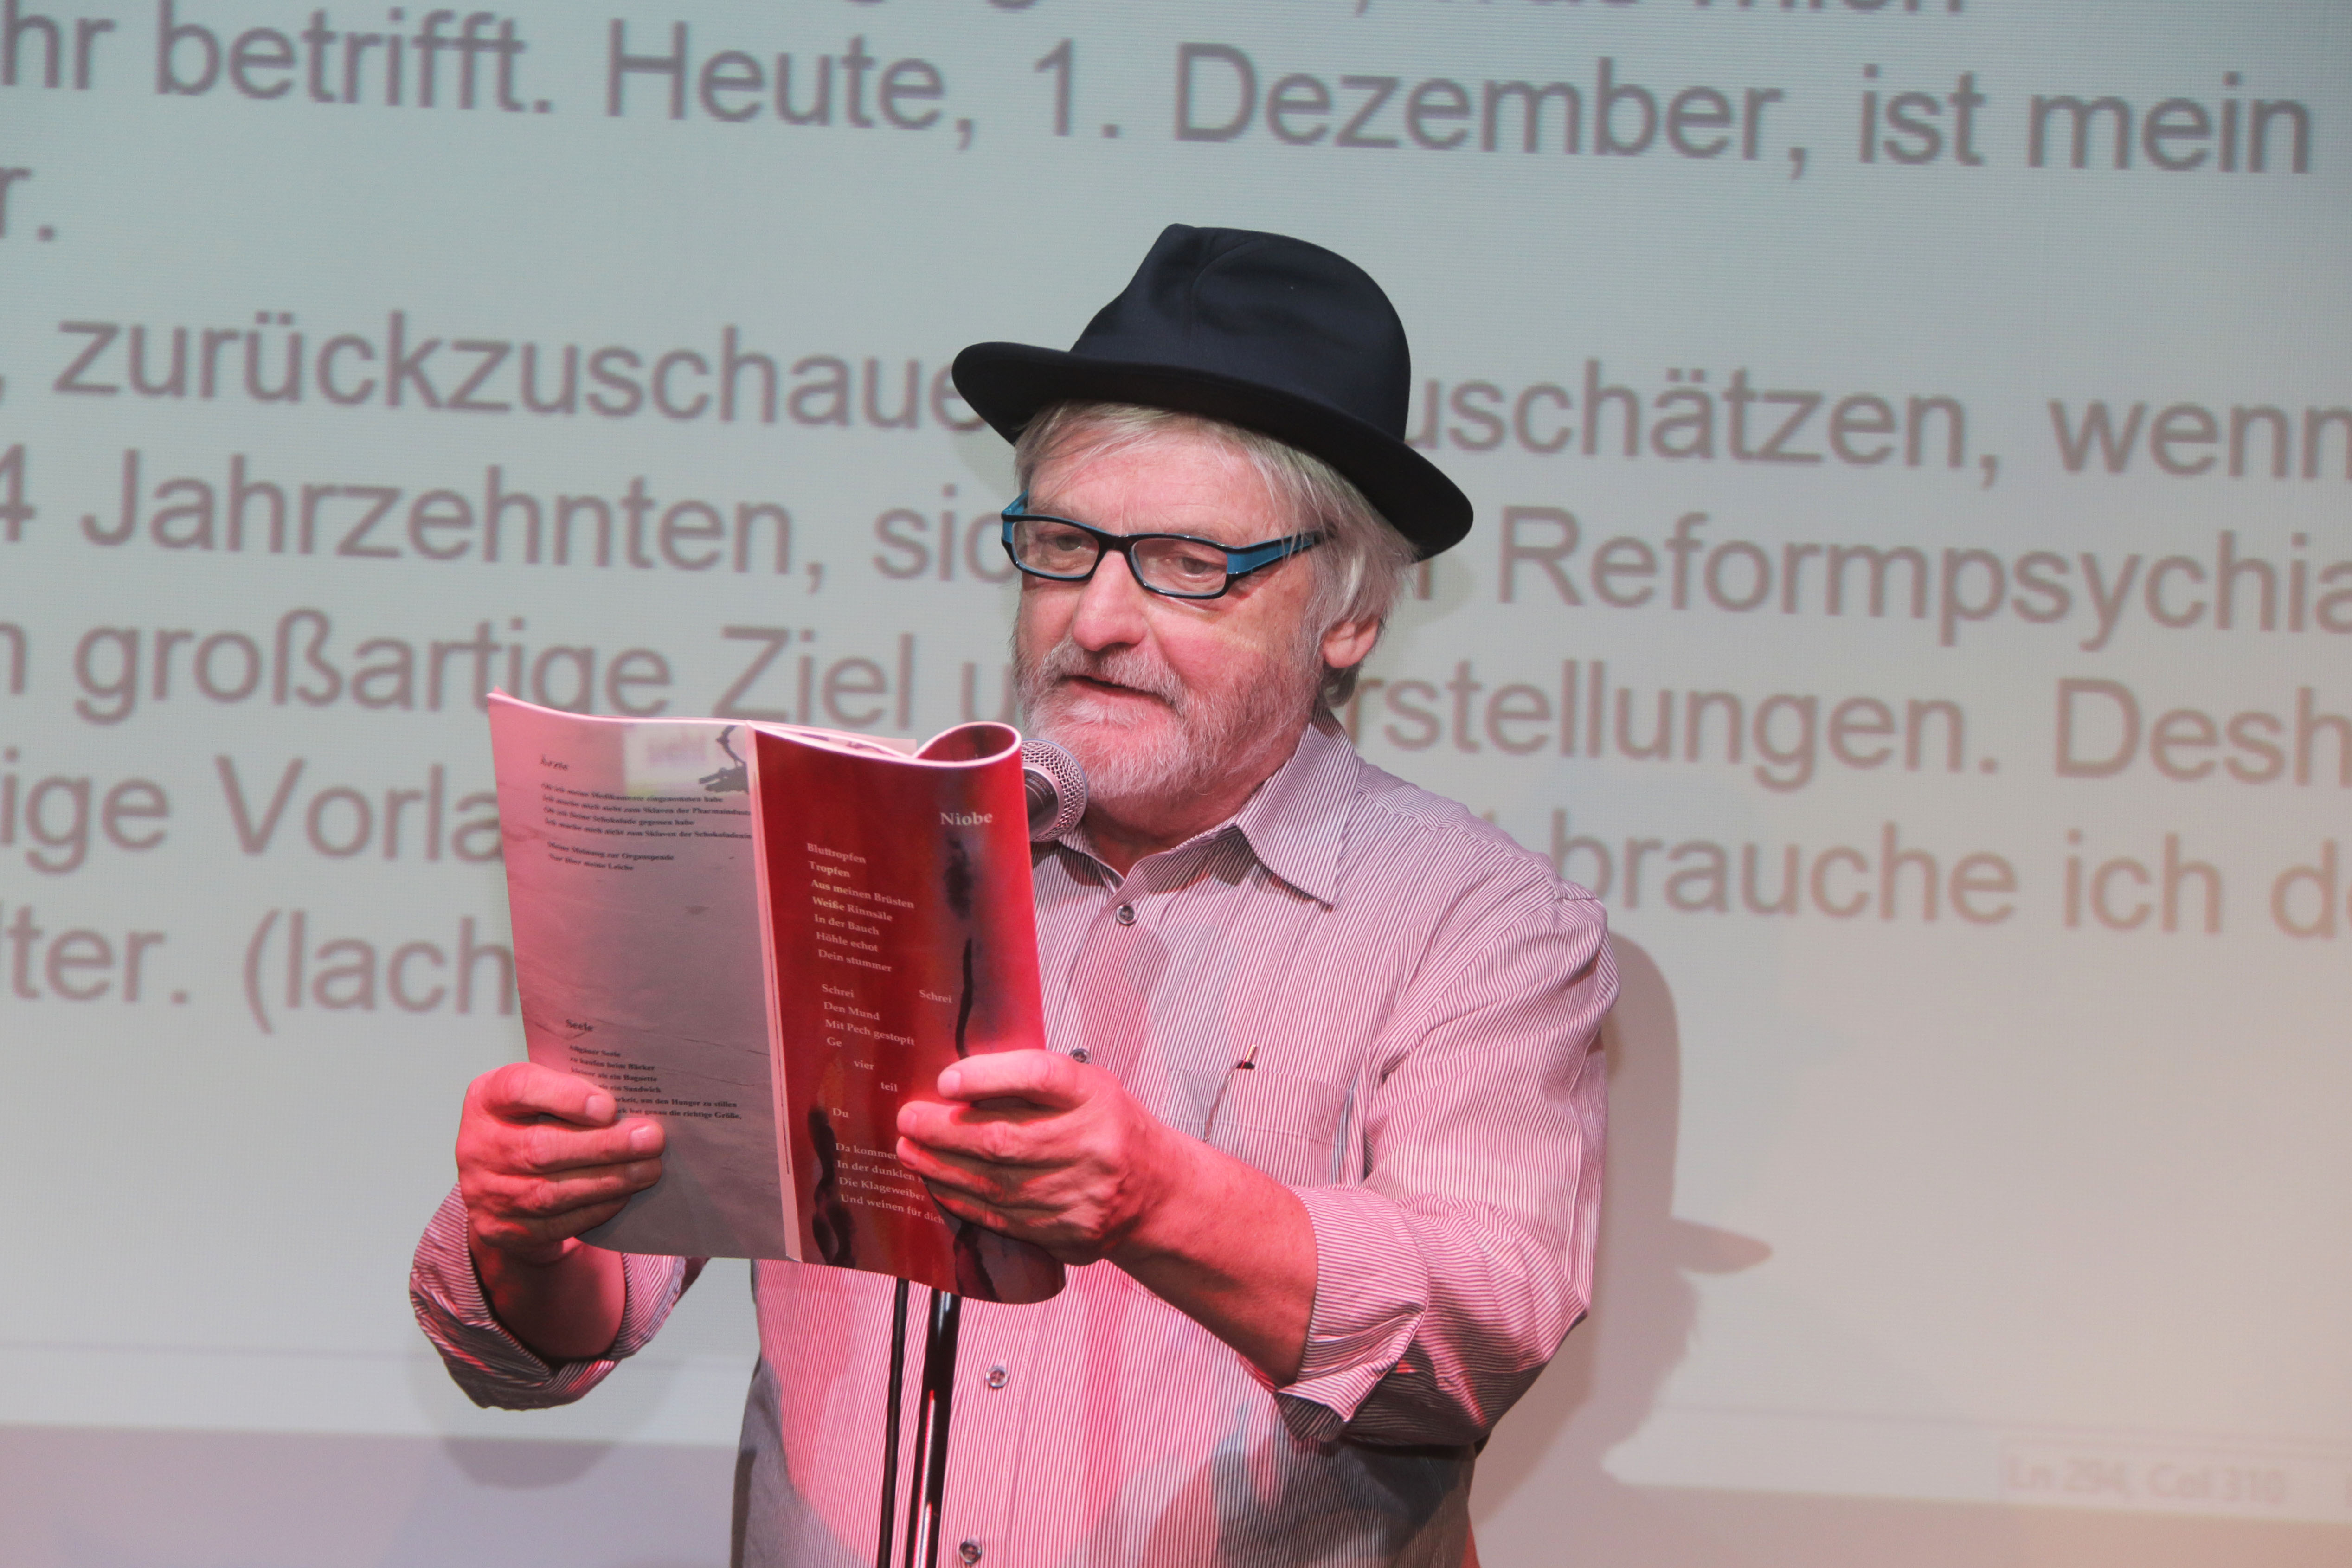 Heinrich gehörte zu den Workshop-Teilnehmern, die bei der Poetry Slam-Show im Kulturzentrum Giesinger Bahnhof auftraten. Foto: Markus Götzfried/ LHM